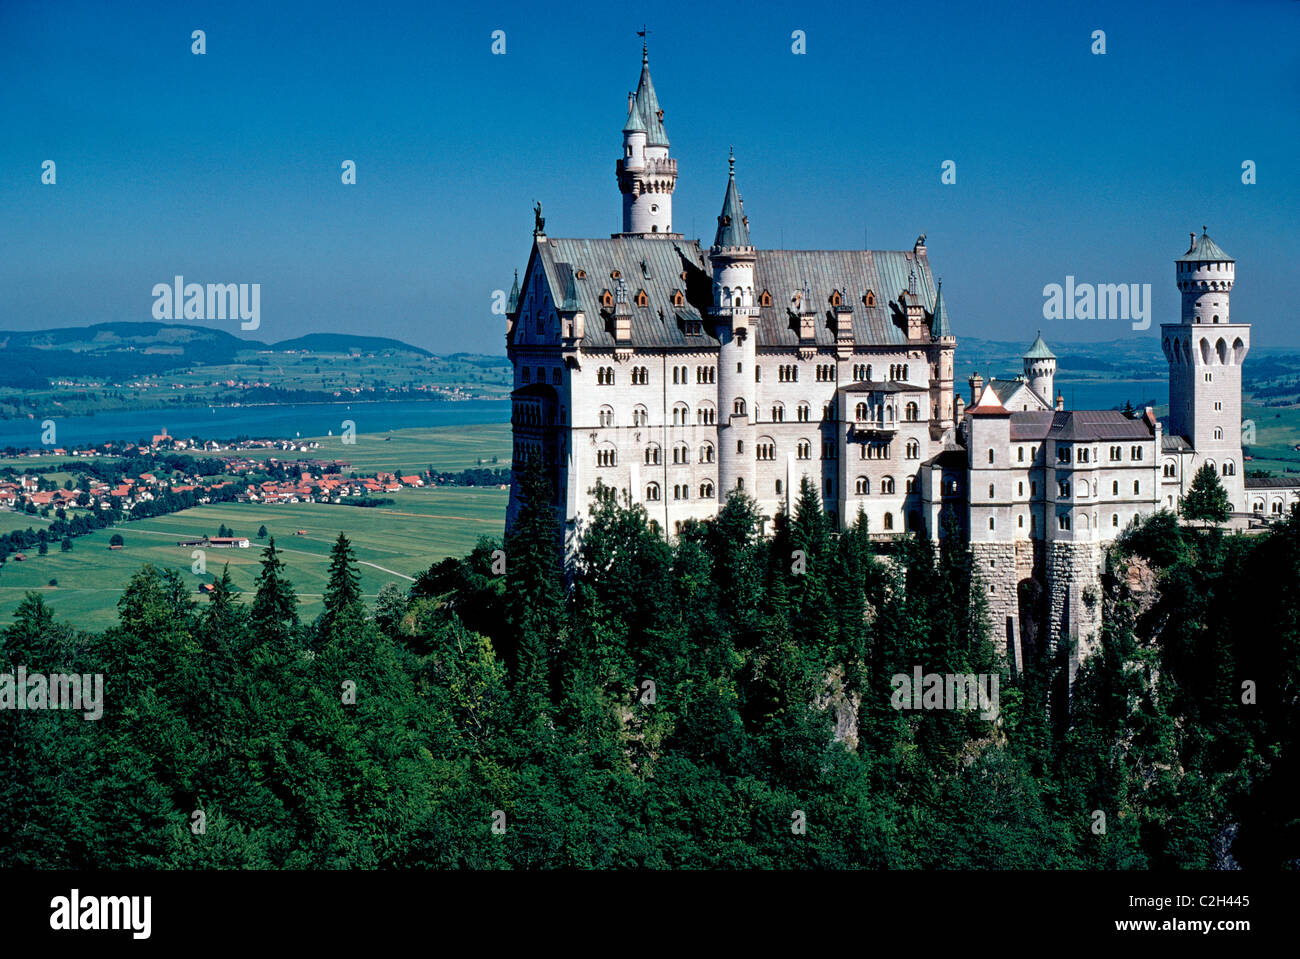 Schloss Neuschwanstein ist der berühmte aus dem 19. Jahrhundert königliche Palast von Mad König Ludwig II auf einem Hügel über dem Dorf Hohenschwangau in Bayern, Deutschland. Stockfoto